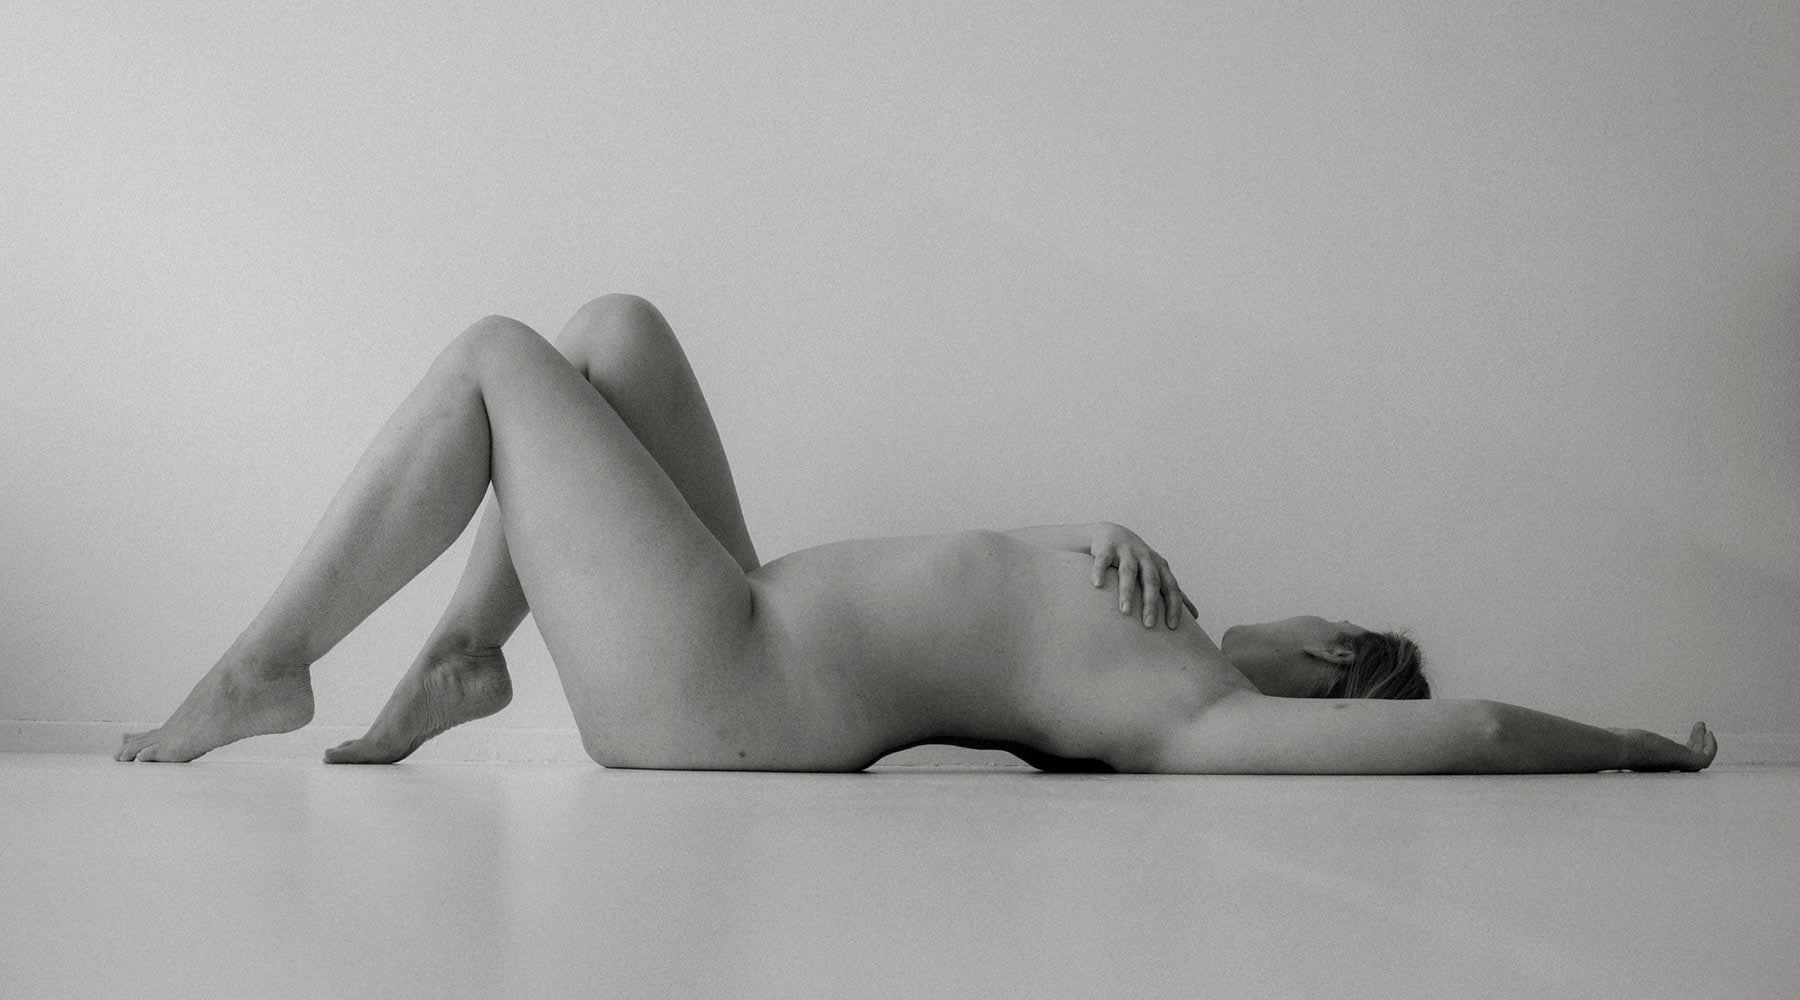 Alastonkuvaus studiolla Eirassa. Nude photography art shoot.